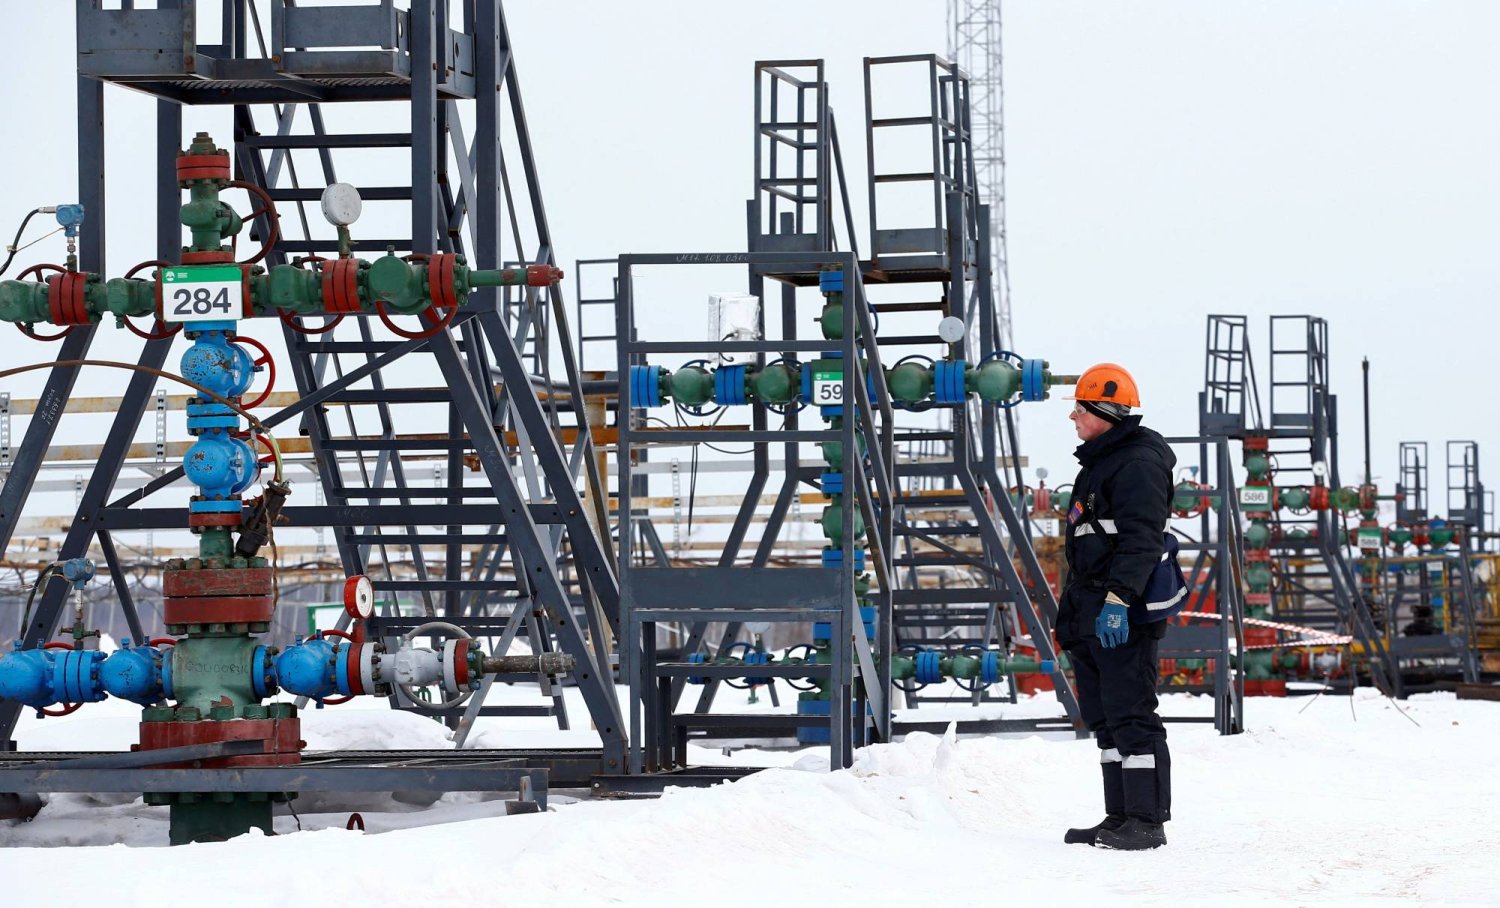 قالت روسيا إنها ستخفض إنتاجها من النفط وصادراتها بمقدار إضافي قدره 471 ألف برميل يومياً في الربع الثاني (رويترز)